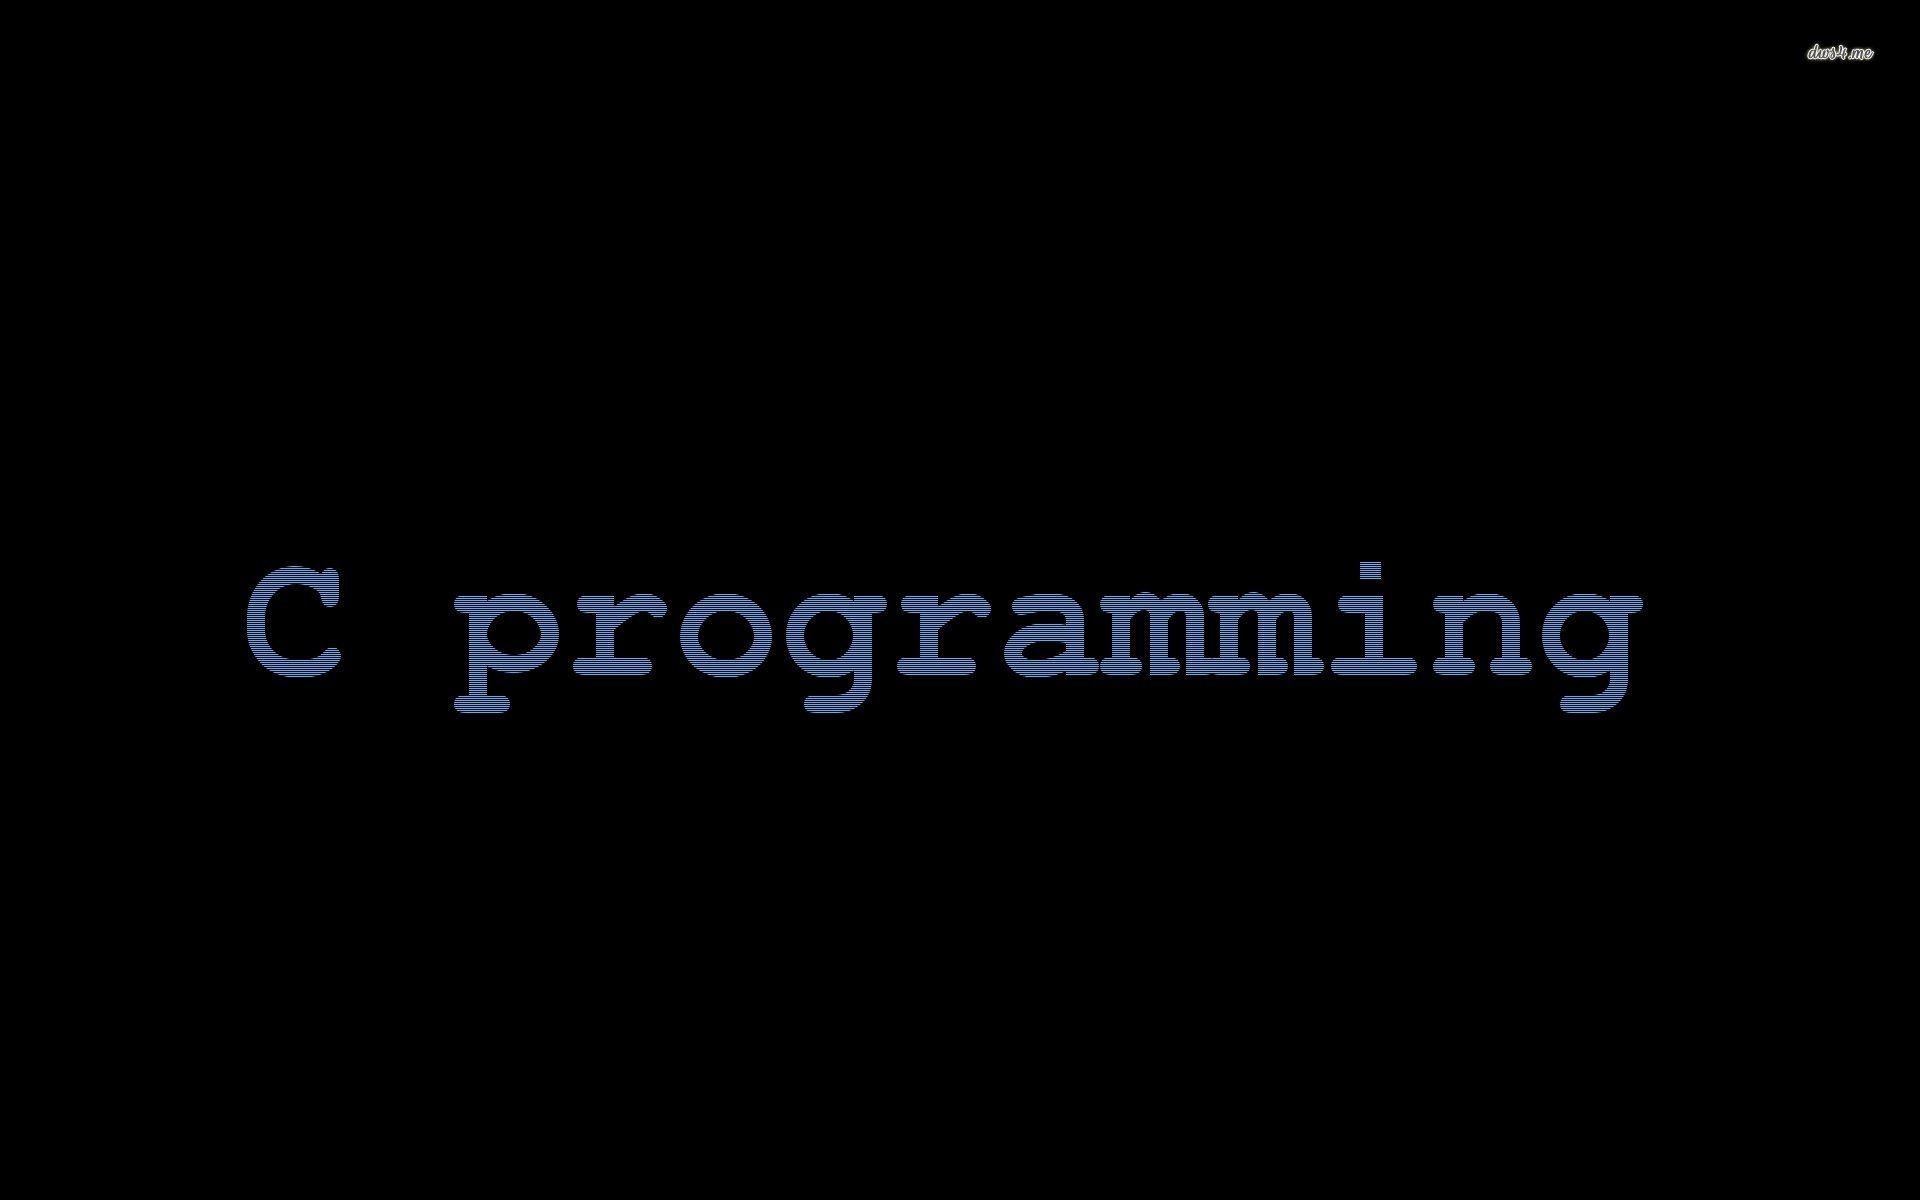 c programming language wallpapers